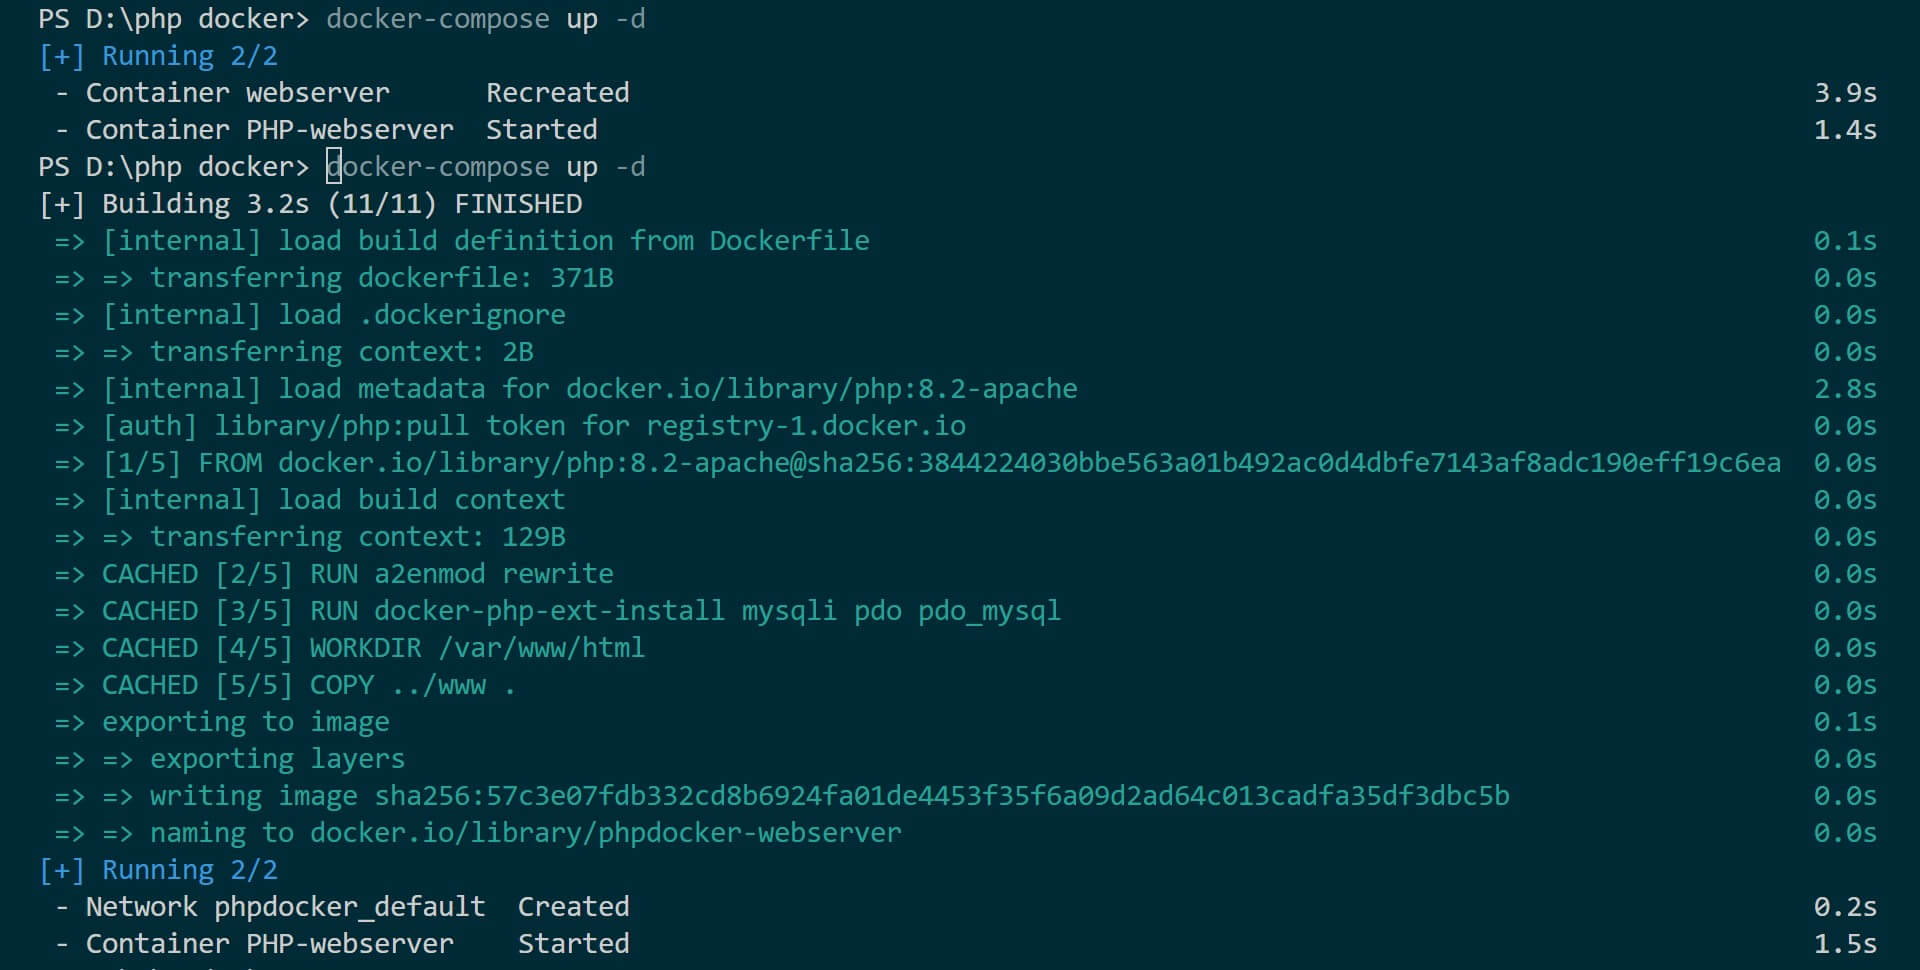 How to use RUN docker php ext install mysqli Command with MySQL